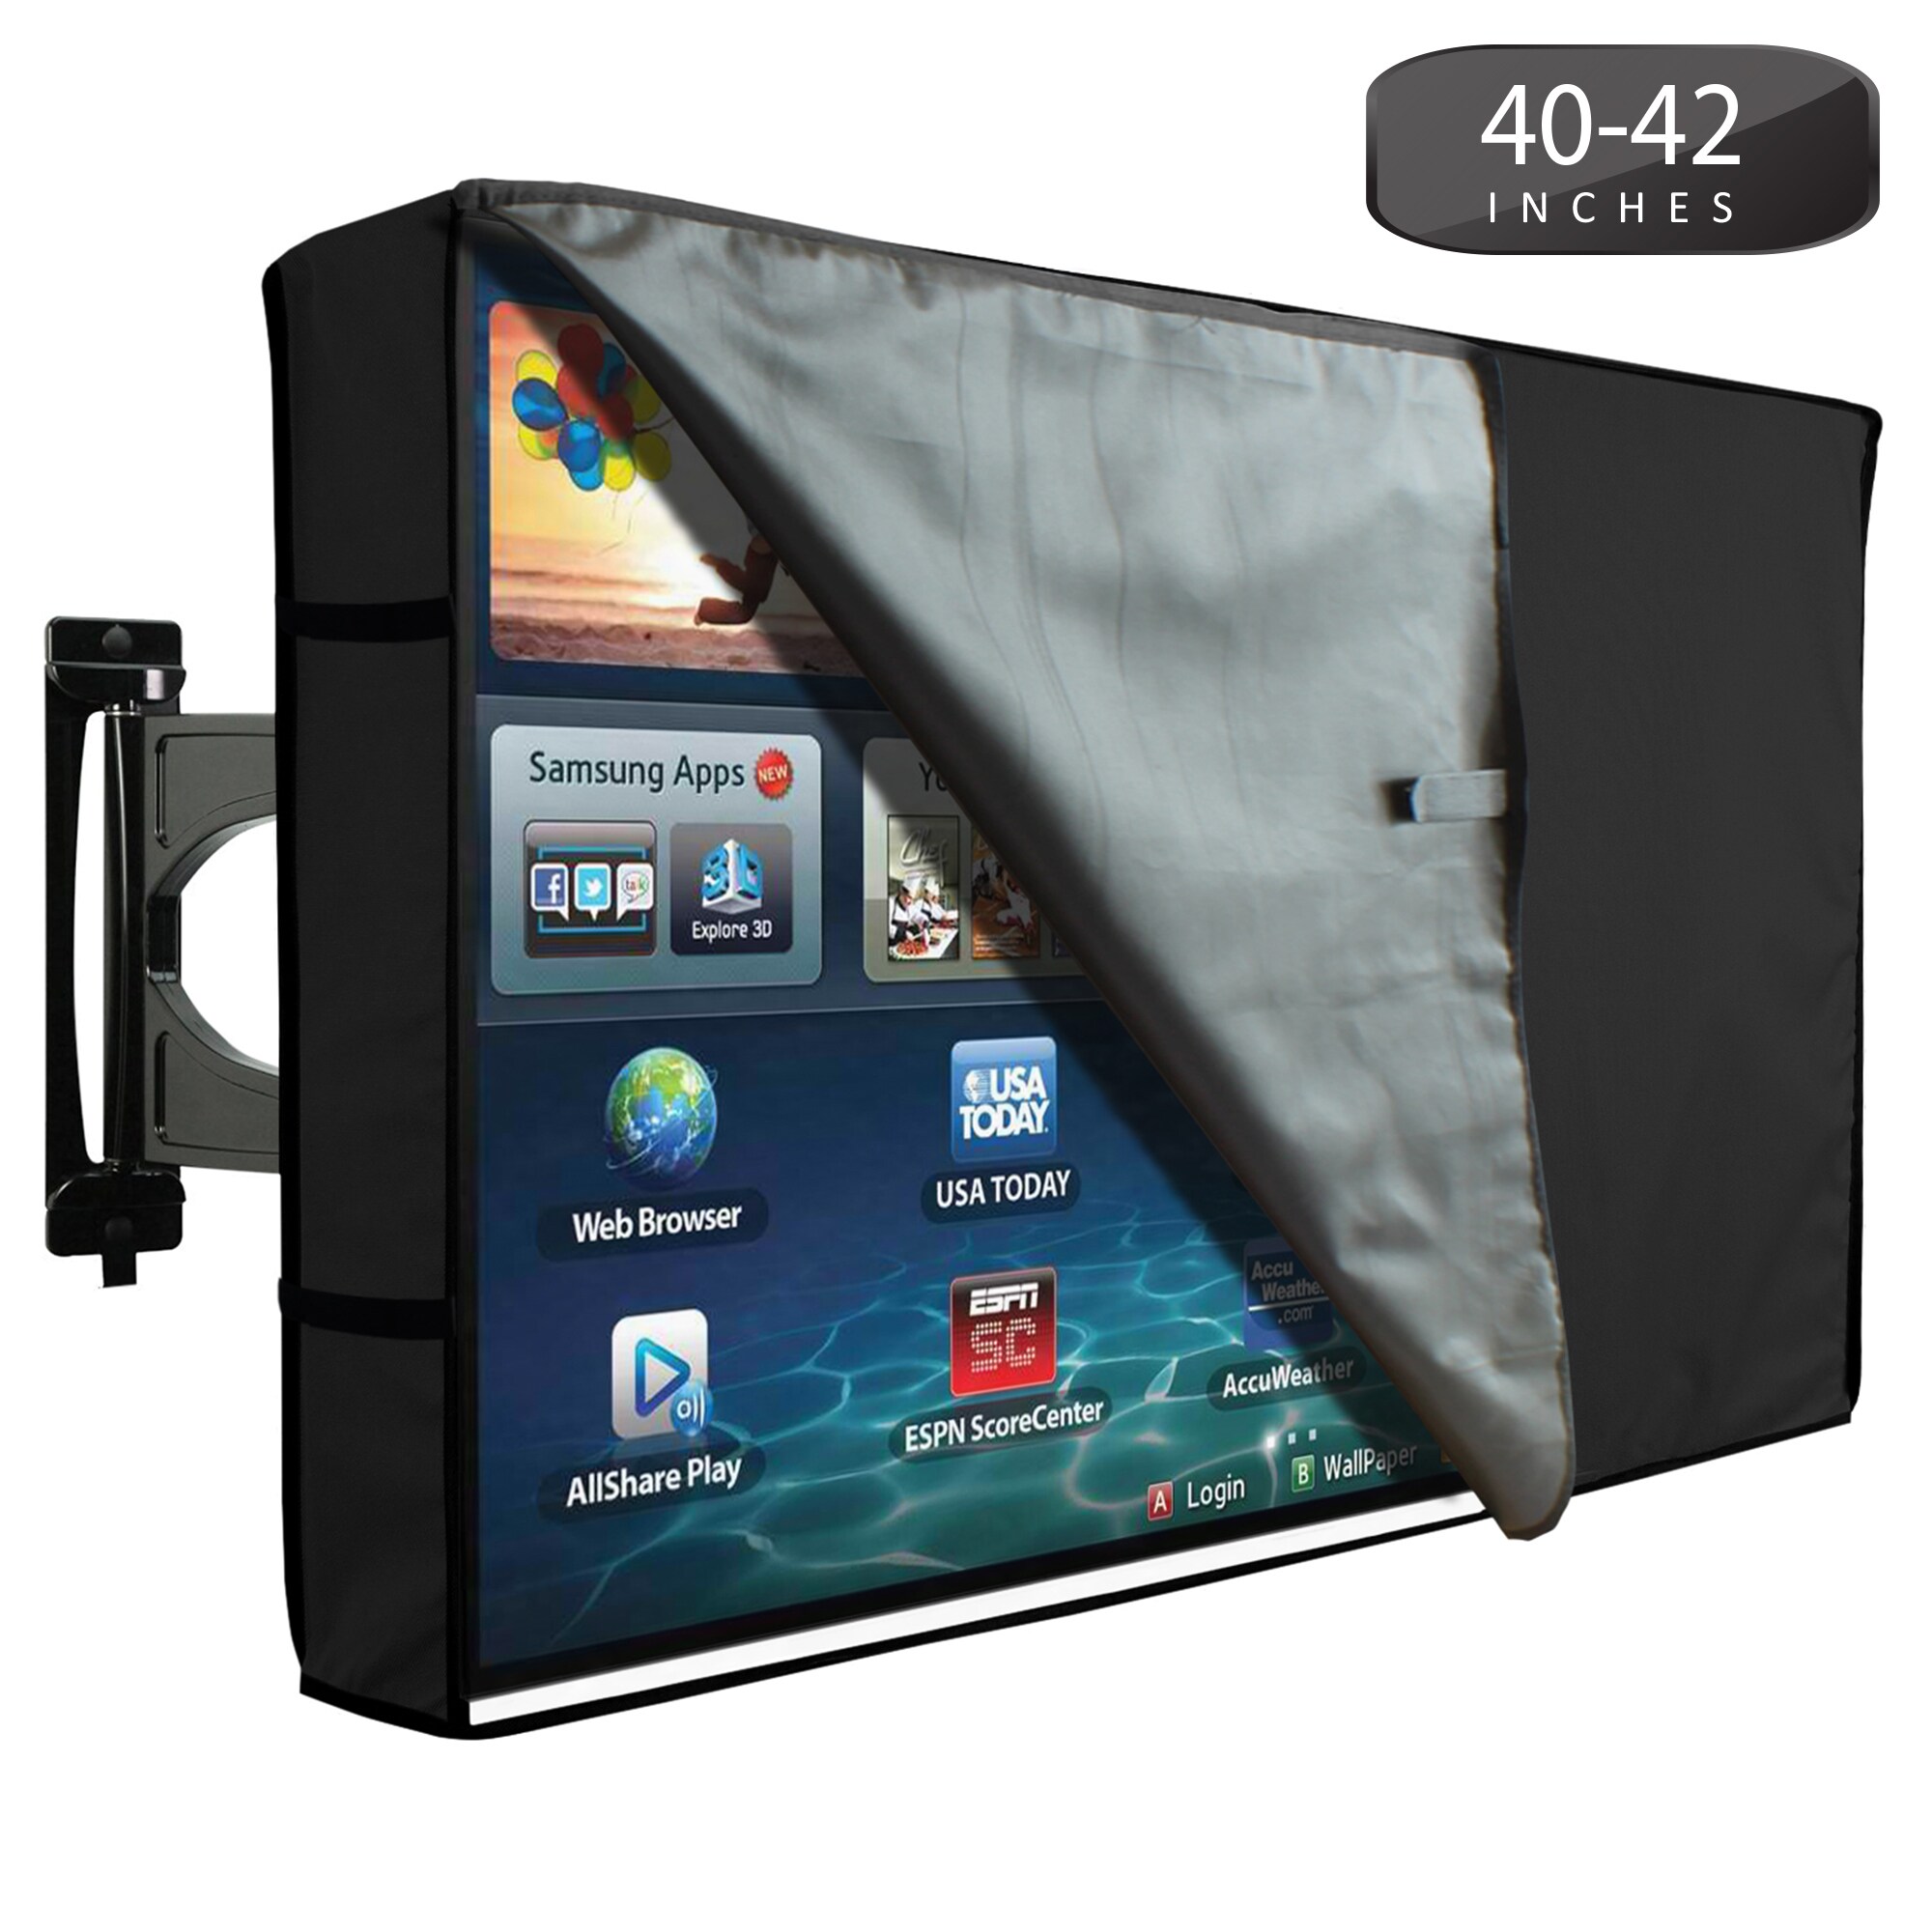 Haudang 40-42 Zoll Outdoor TV Abdeckung mit Bodenabdeckung Wetterfest Staubdicht Schutz LCD LED Plasma TV Abdeckung 